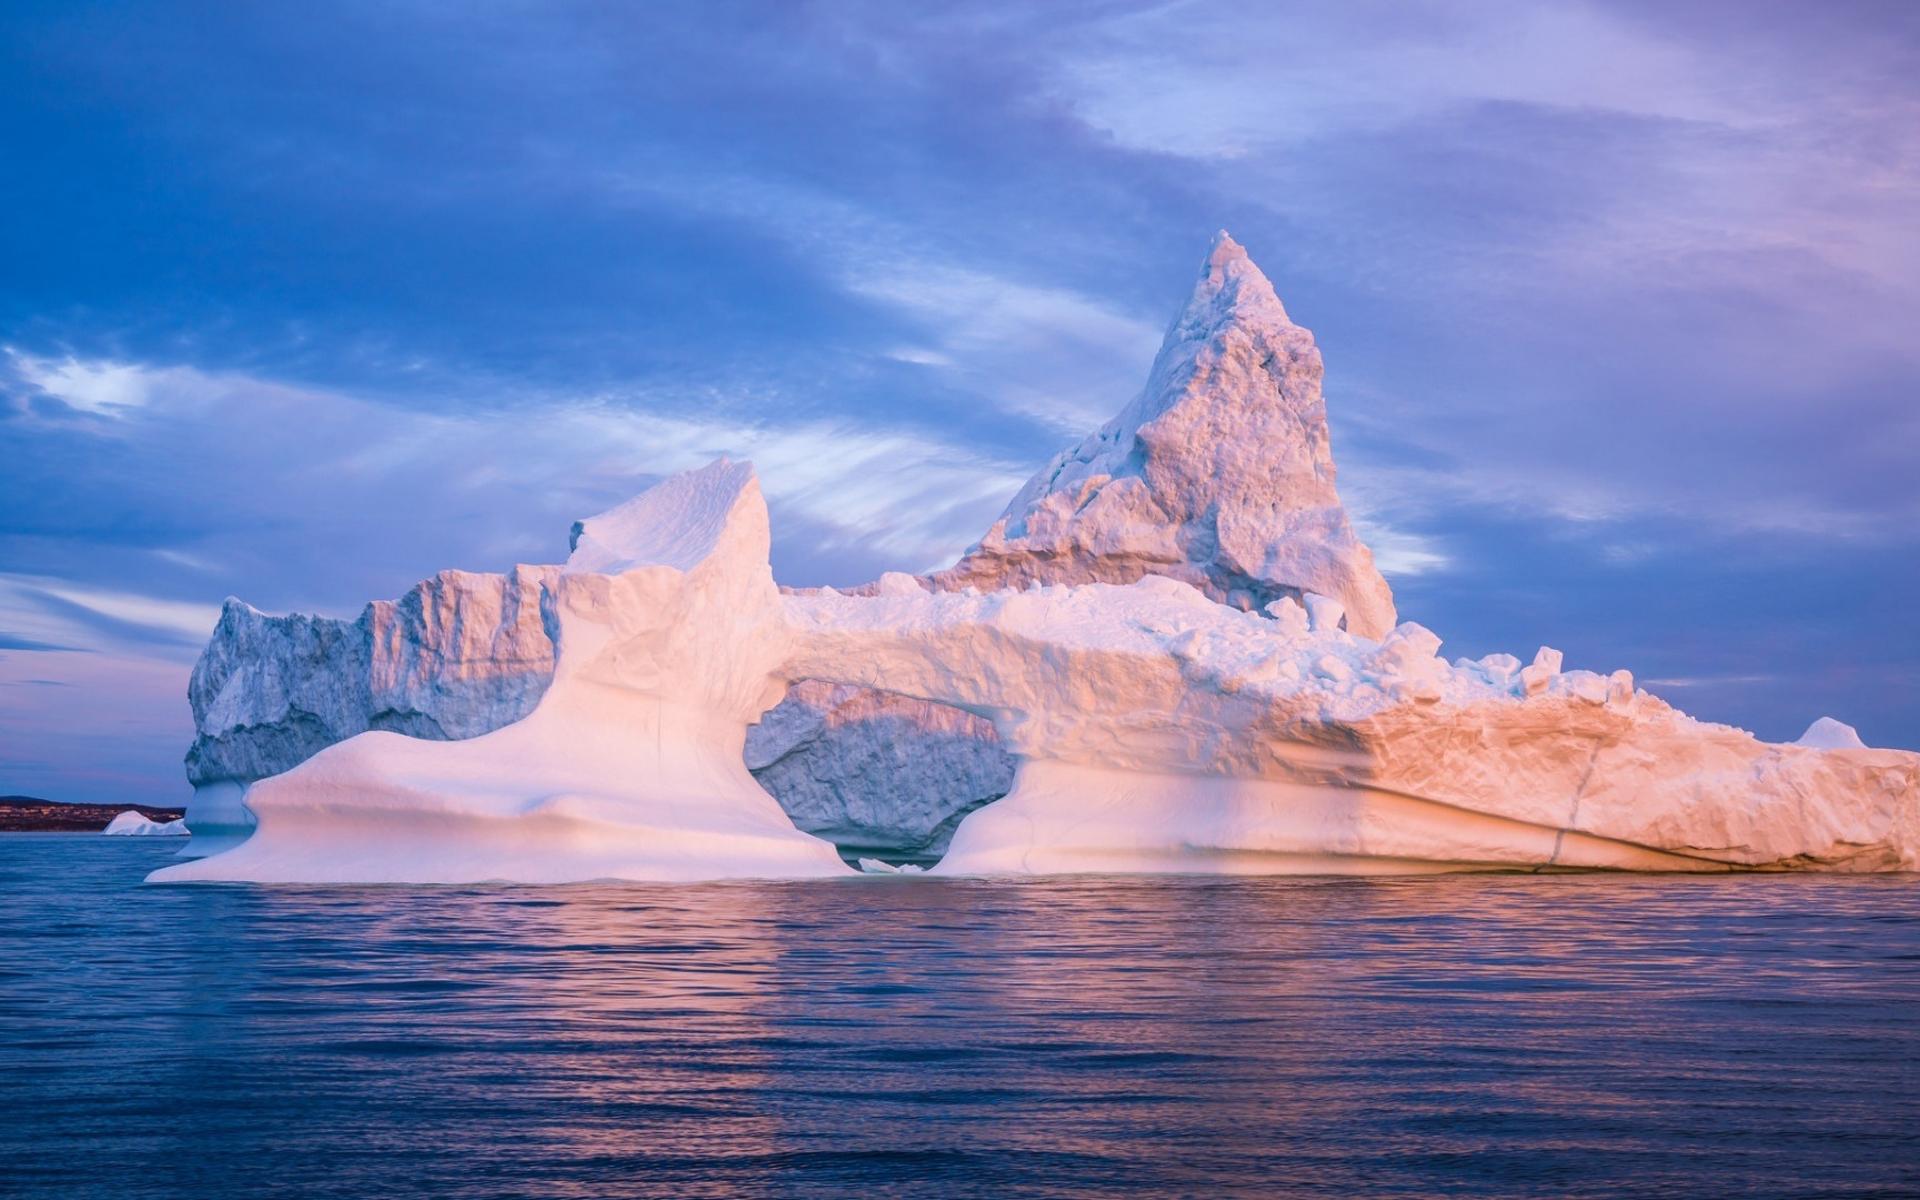 2017年拍摄的格陵兰岛极光照片，当时看到荷兰摄影师Max Rive的照片被吸引至此。格陵兰南部的峡湾里巨峰林立，怪石嶙峋，冰川运动造就的壮观 ...